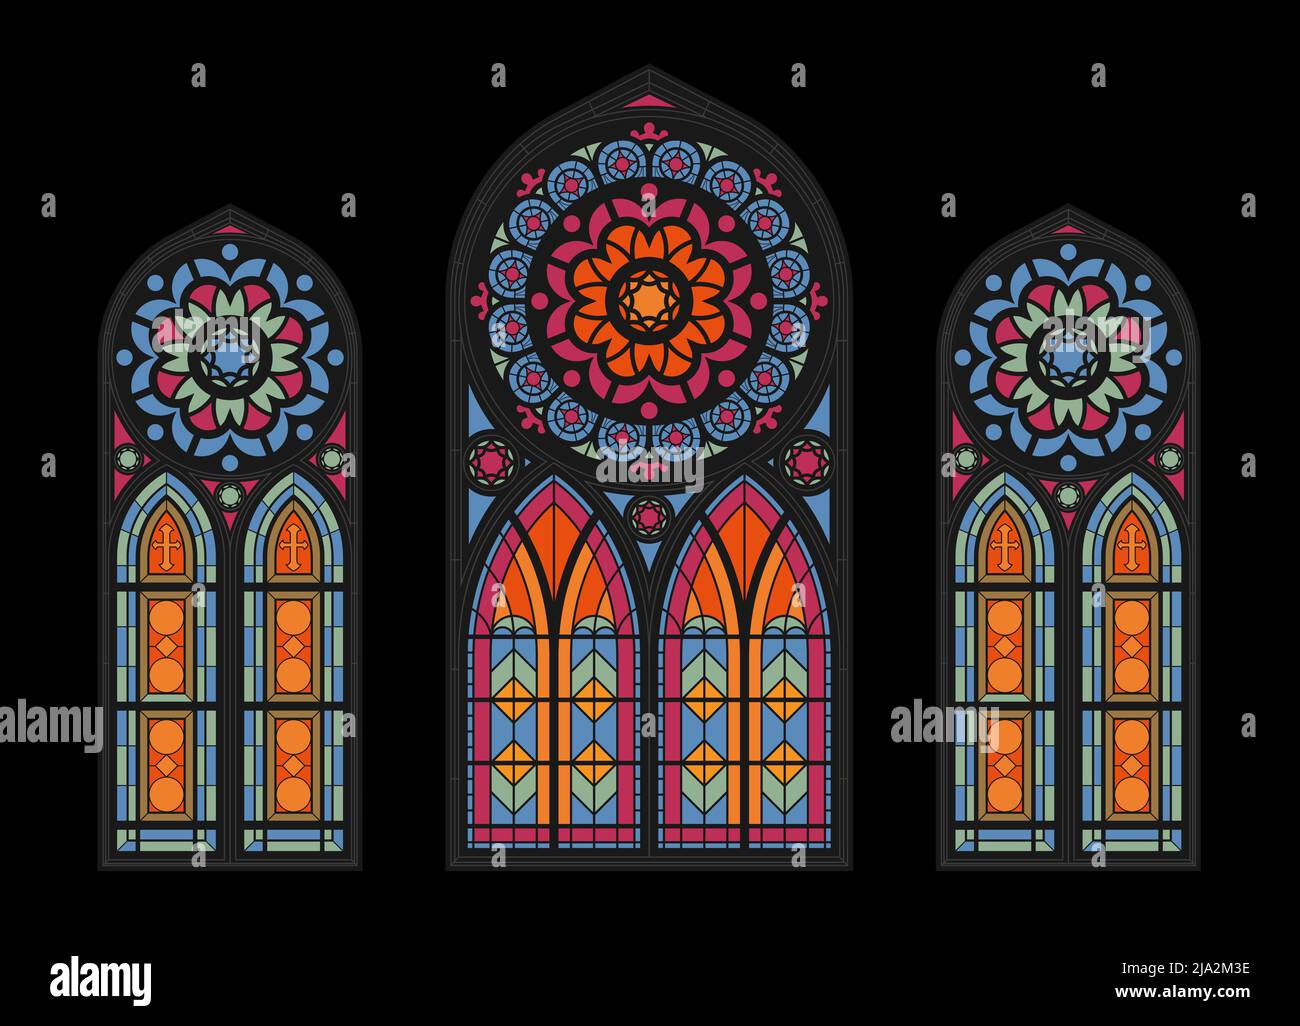 Vetrate colorate mosaico finestre cattedrale su sfondo scuro chiesa gotica bella vista interna nuvoloso illustrazione vettoriale Illustrazione Vettoriale